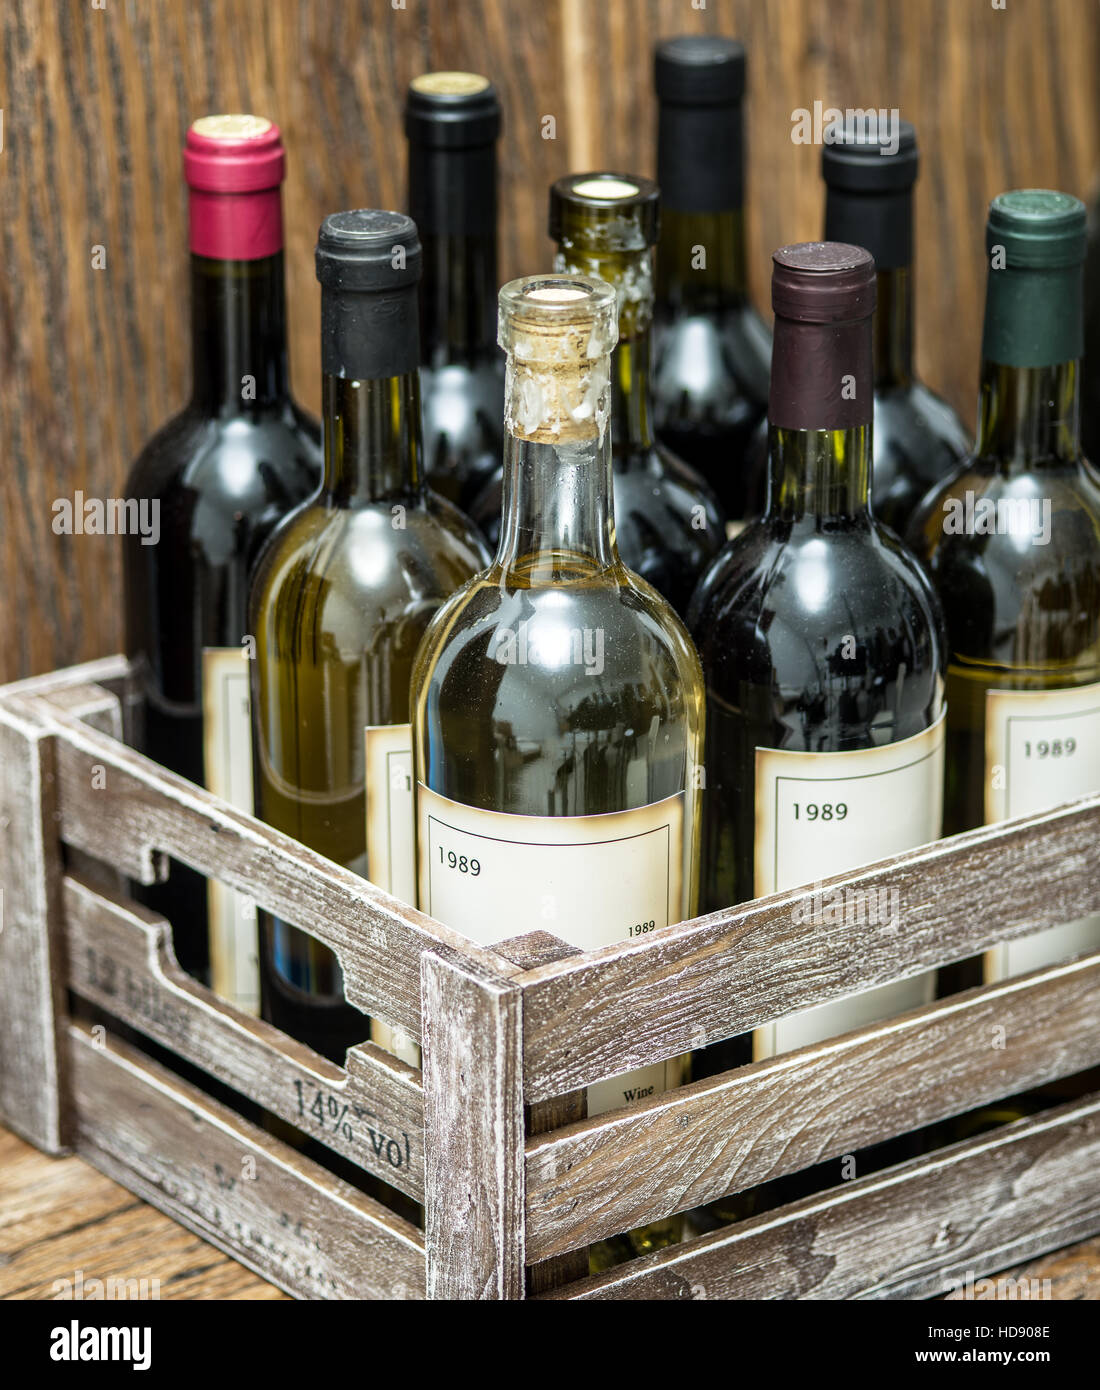 Alte Weinflaschen in einer Holzkiste. Stockfoto